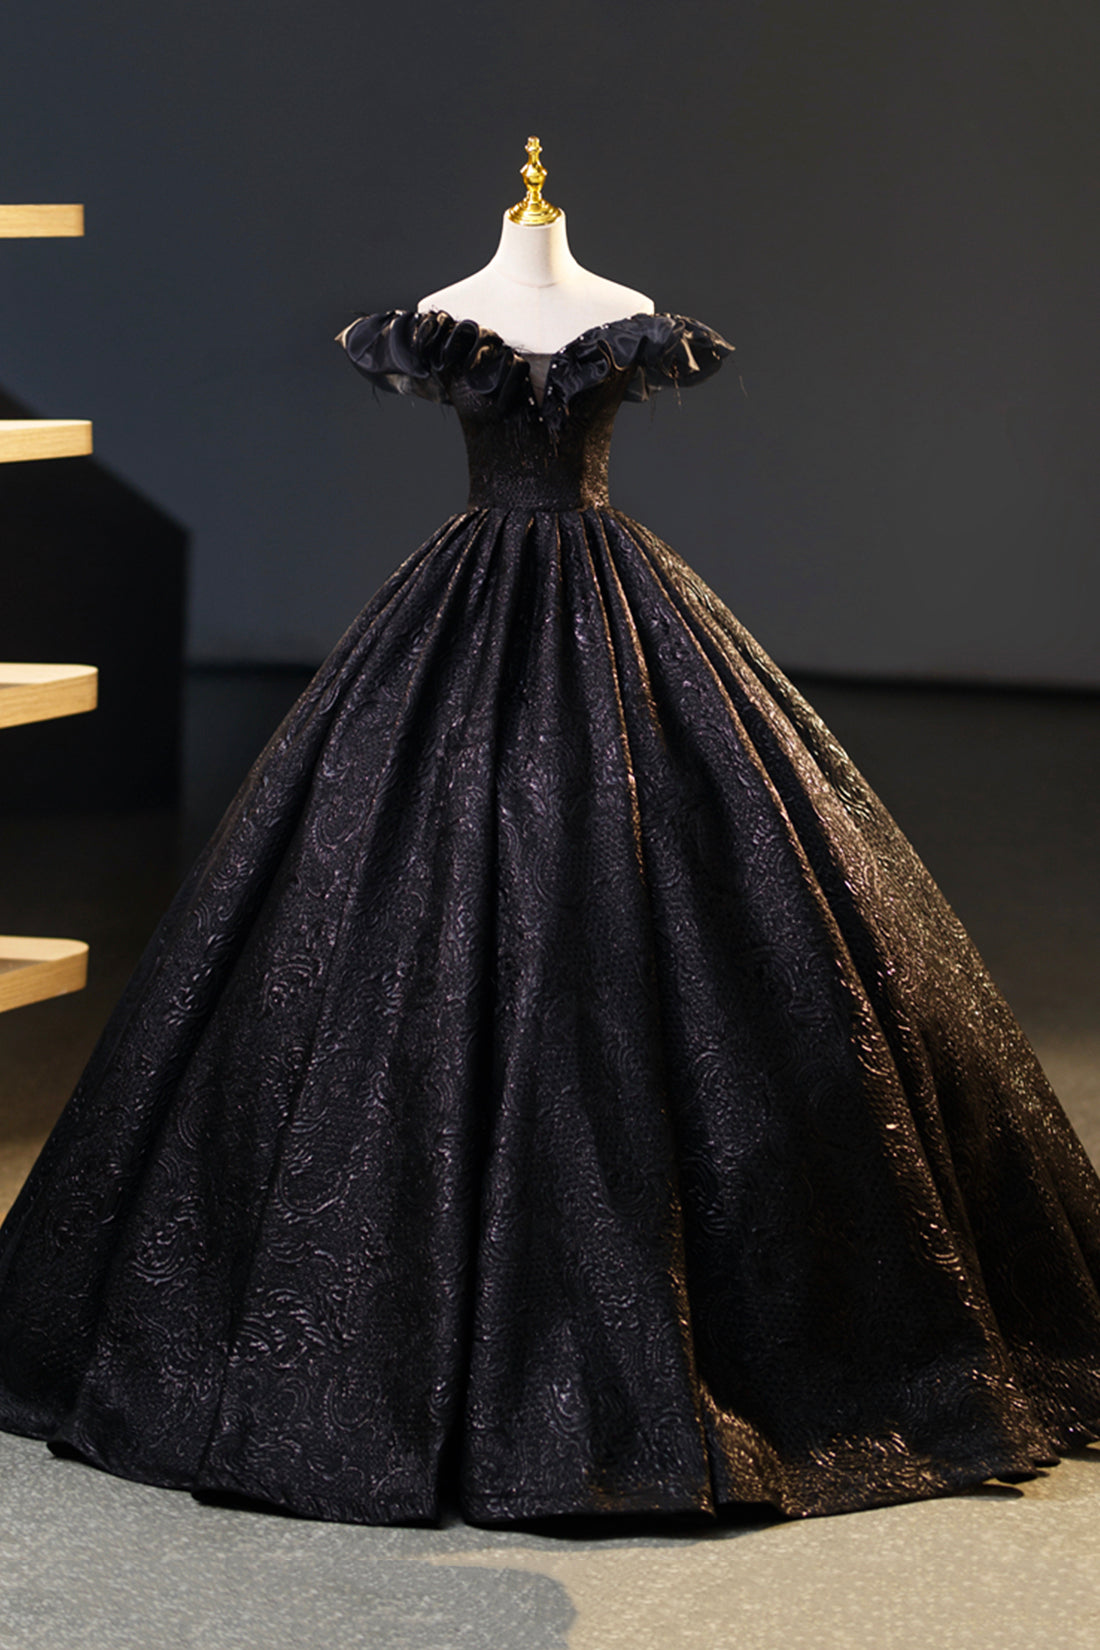 Black Floor Length V-neck Off the Shoulder Formal Dress Outfits For Girls, Black A-Line Evening Dress